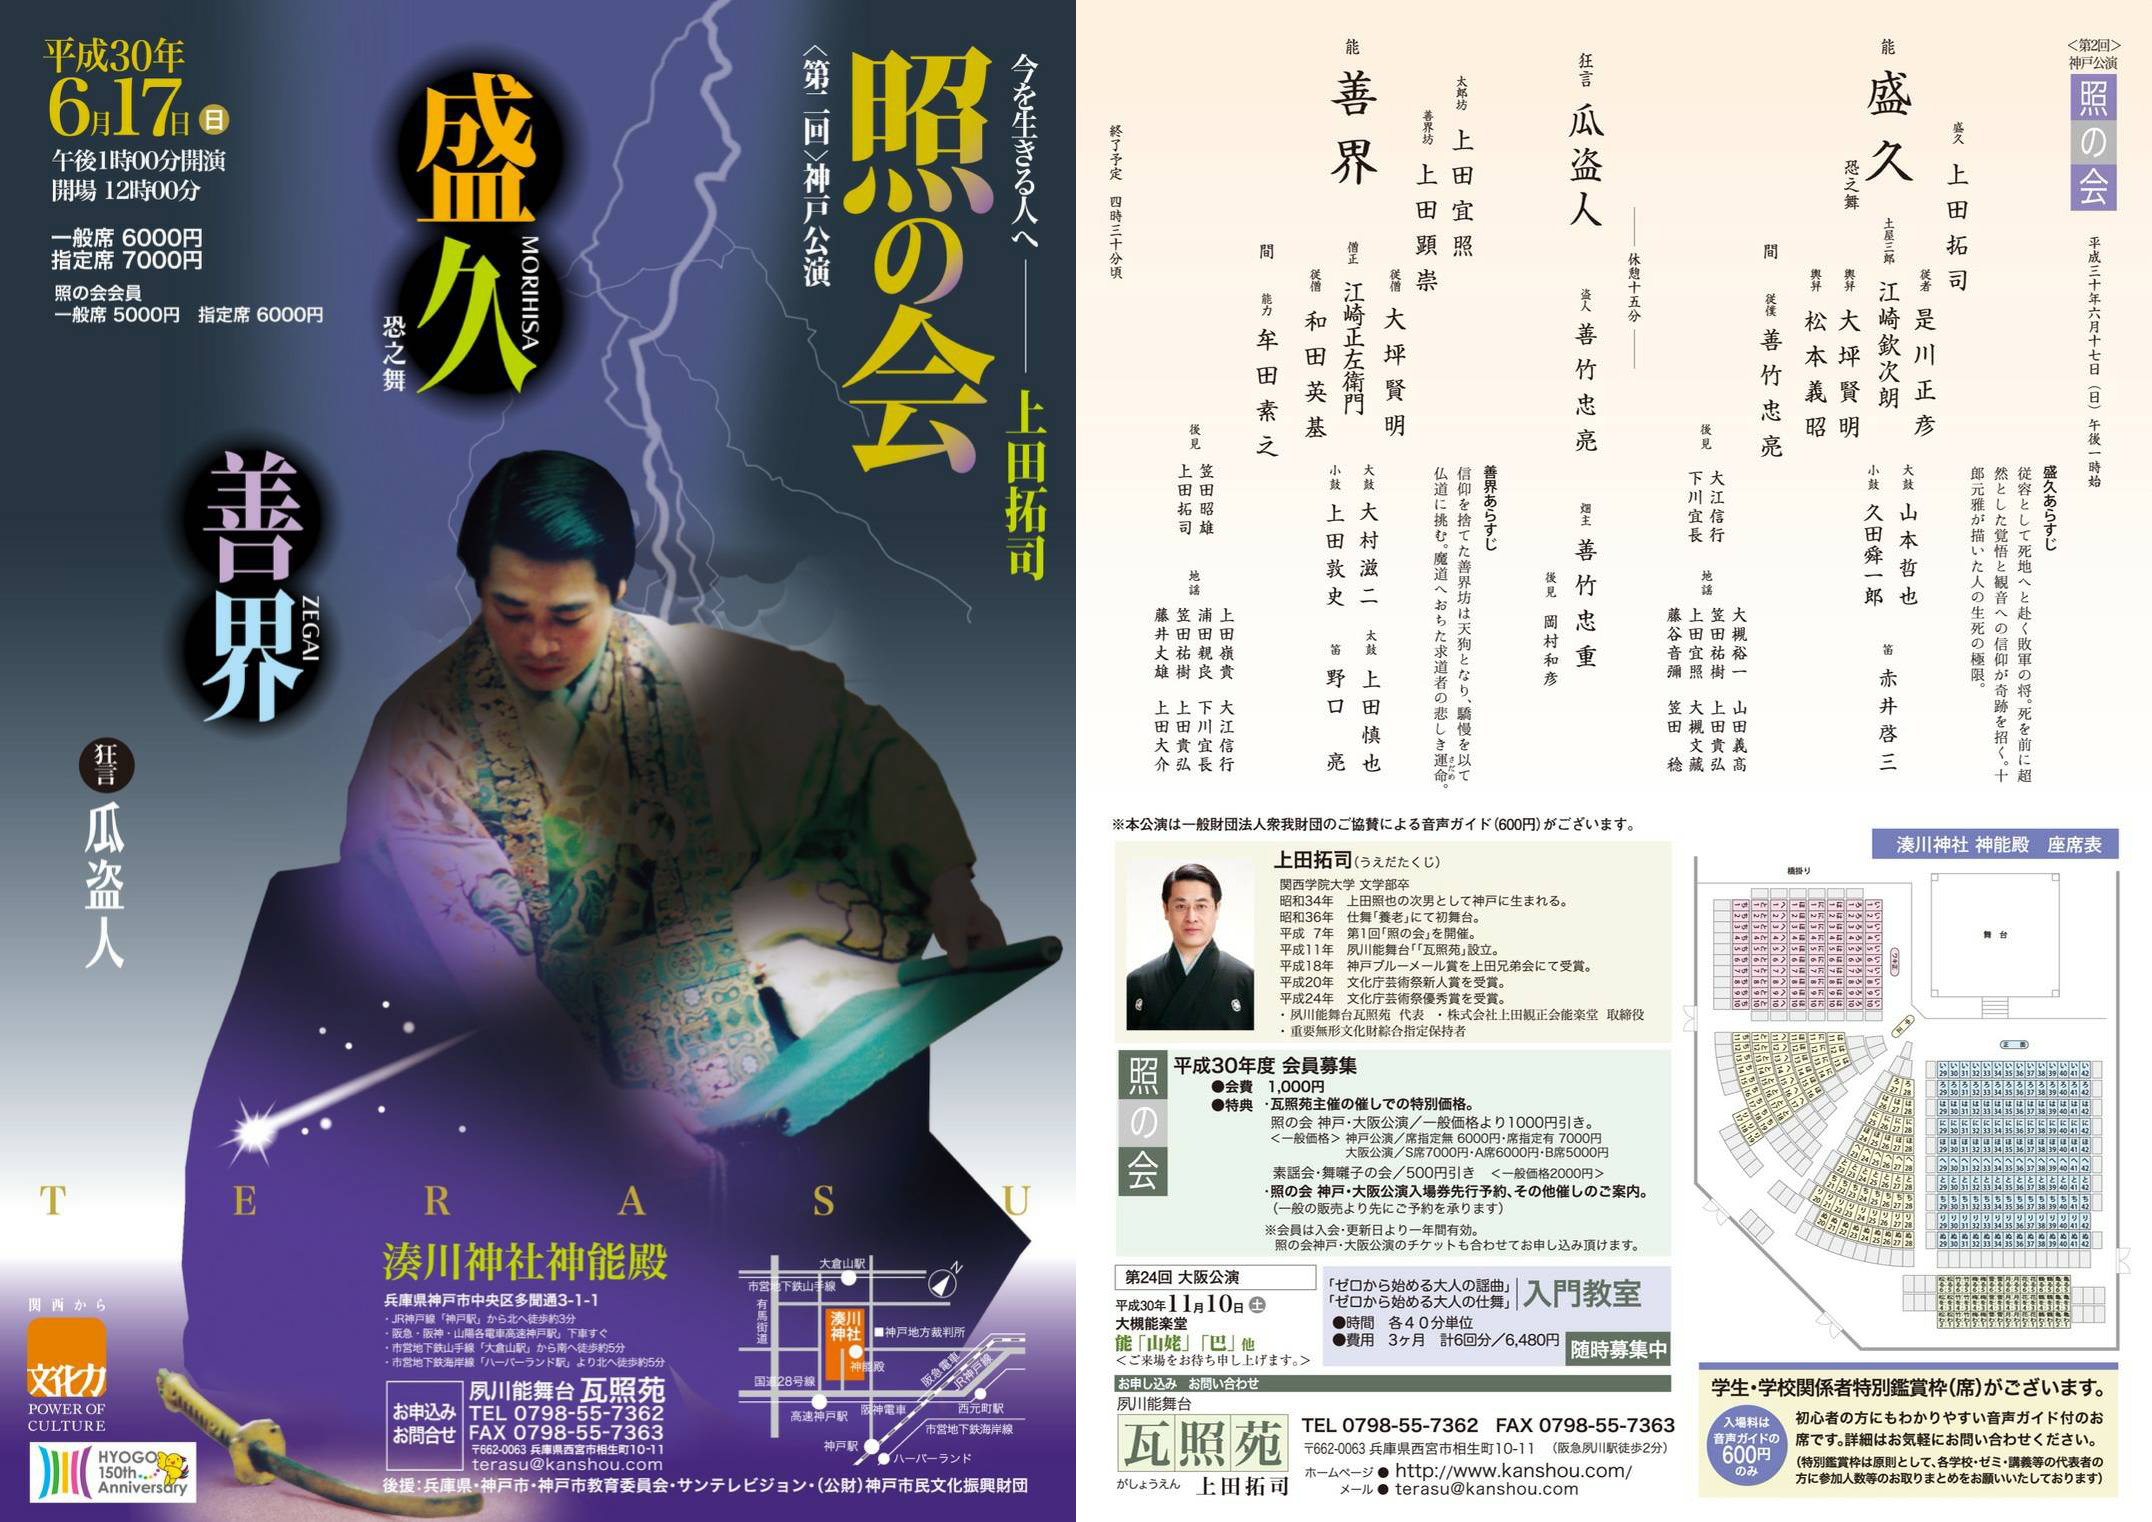 「照の会」第二回神戸公演に音声ガイド半額援助サムネイル